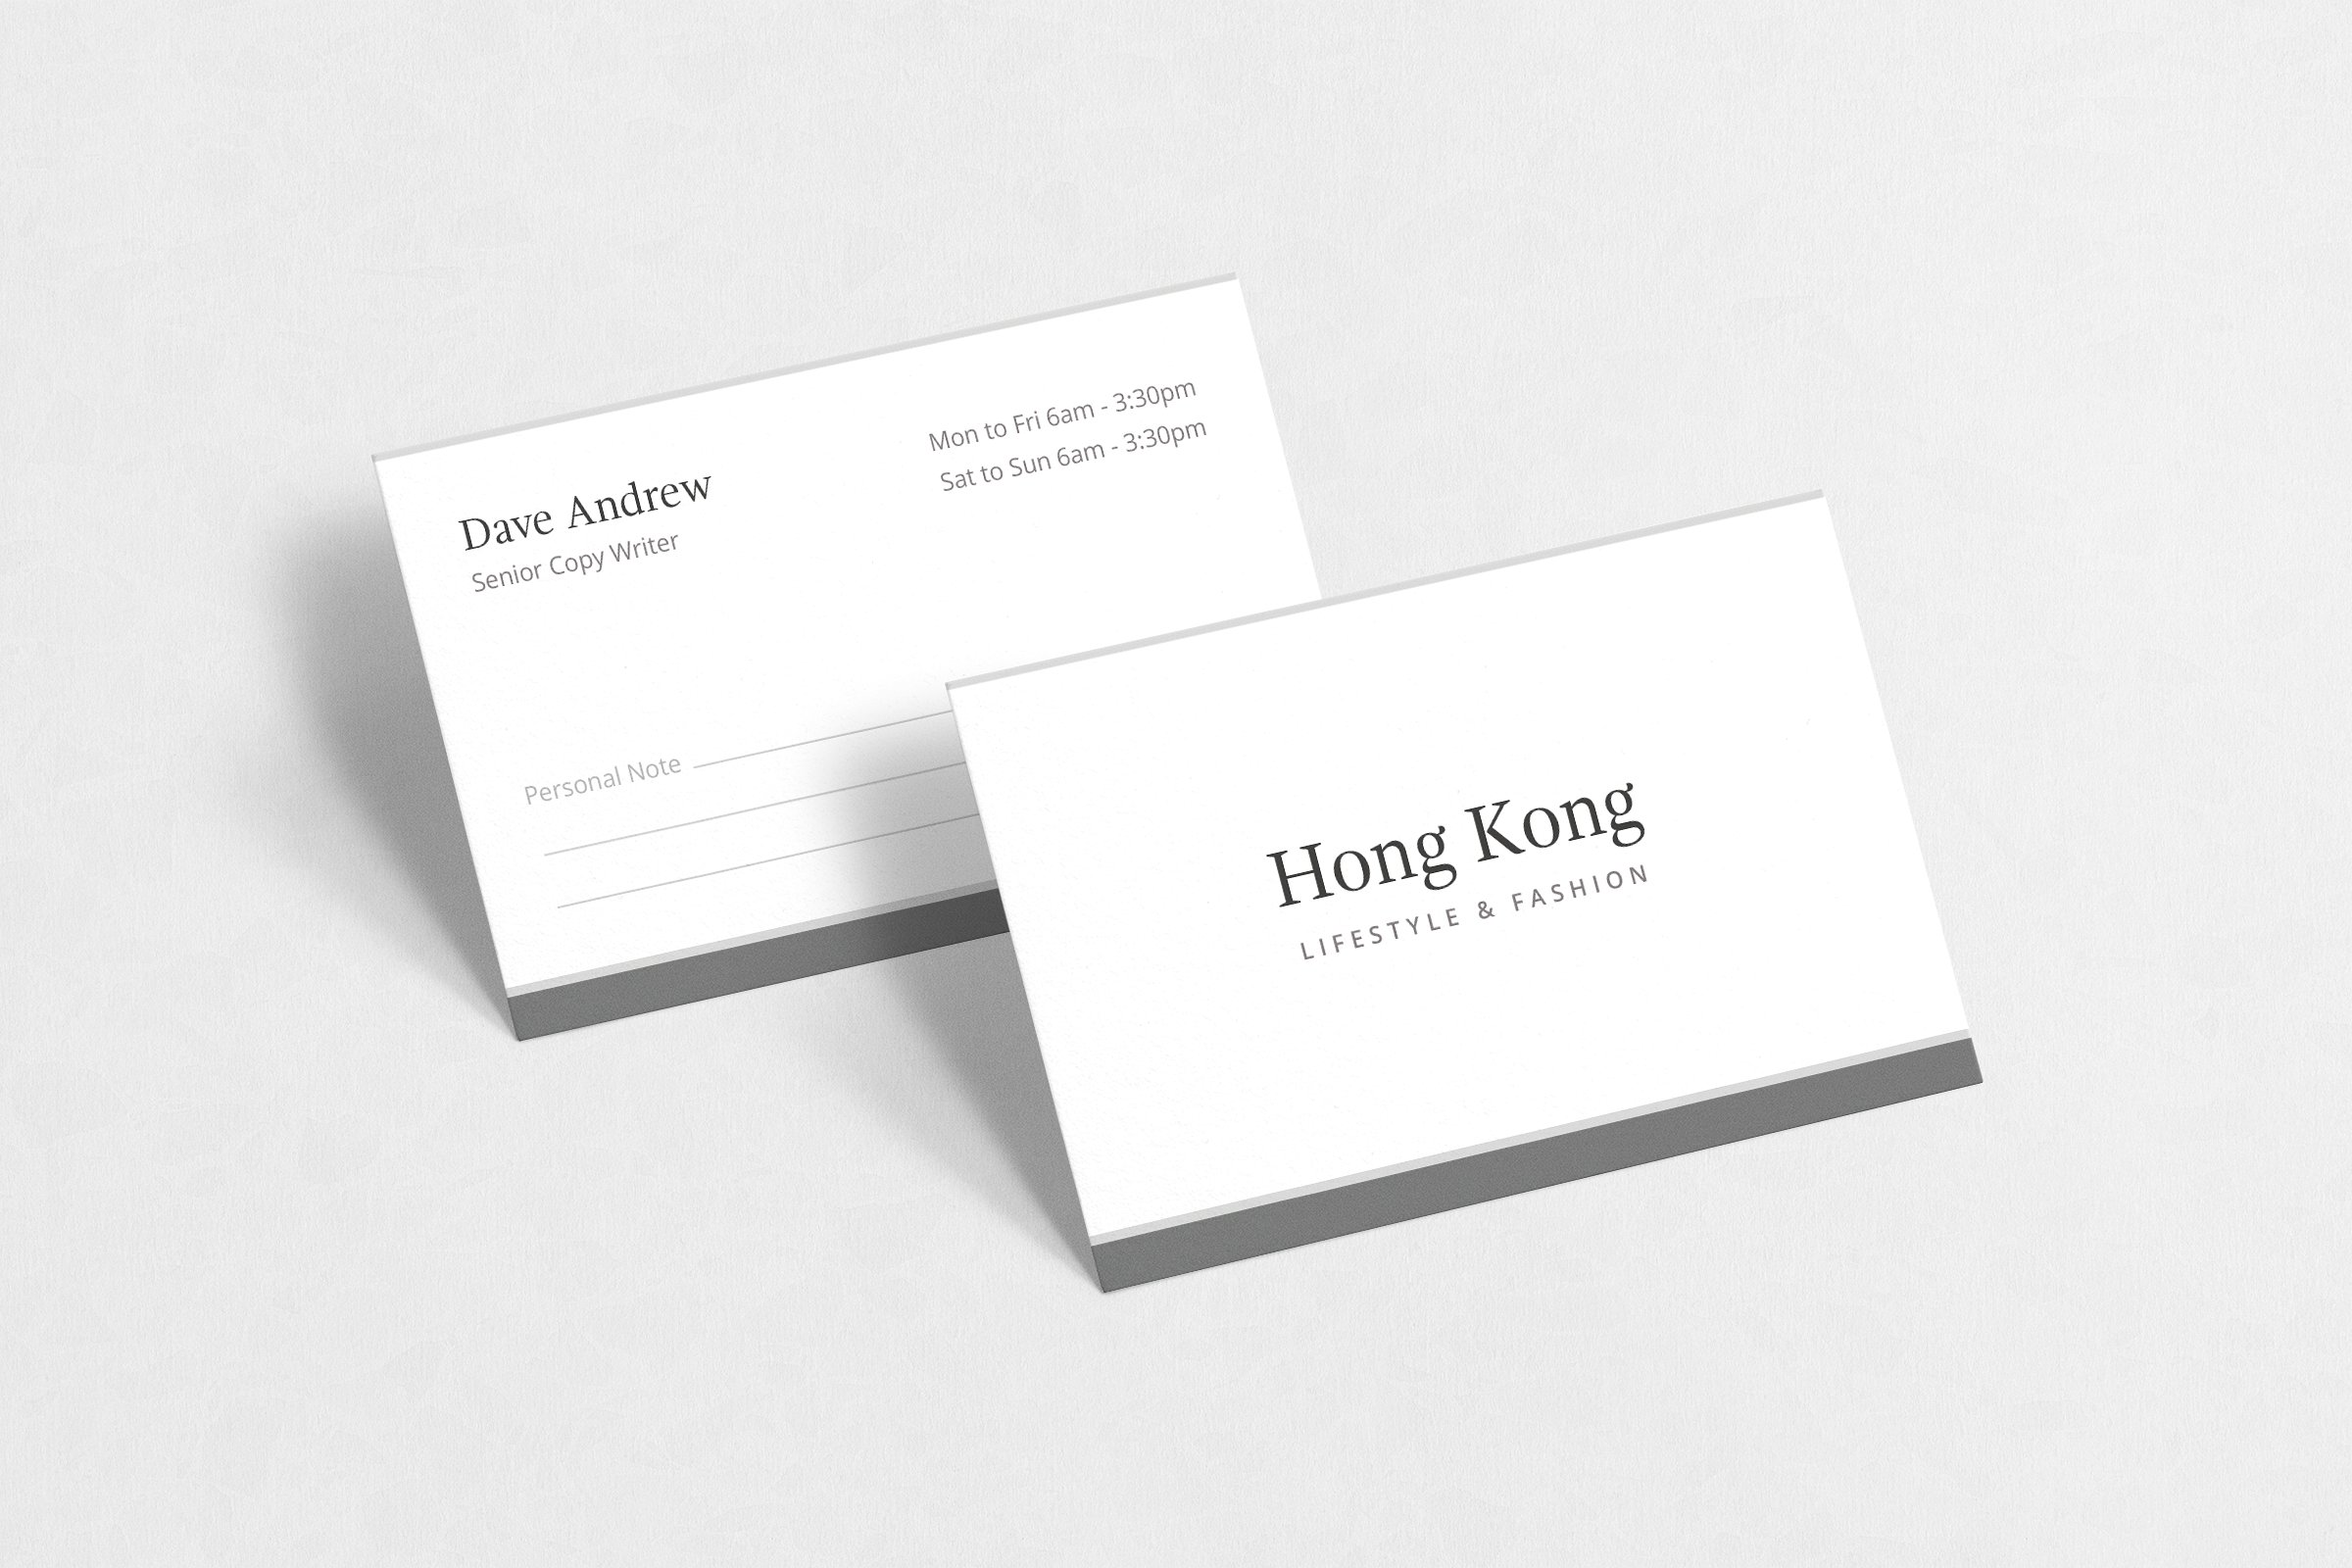 极简主义企业名片设计模板4 Hong Kong Business Card插图3